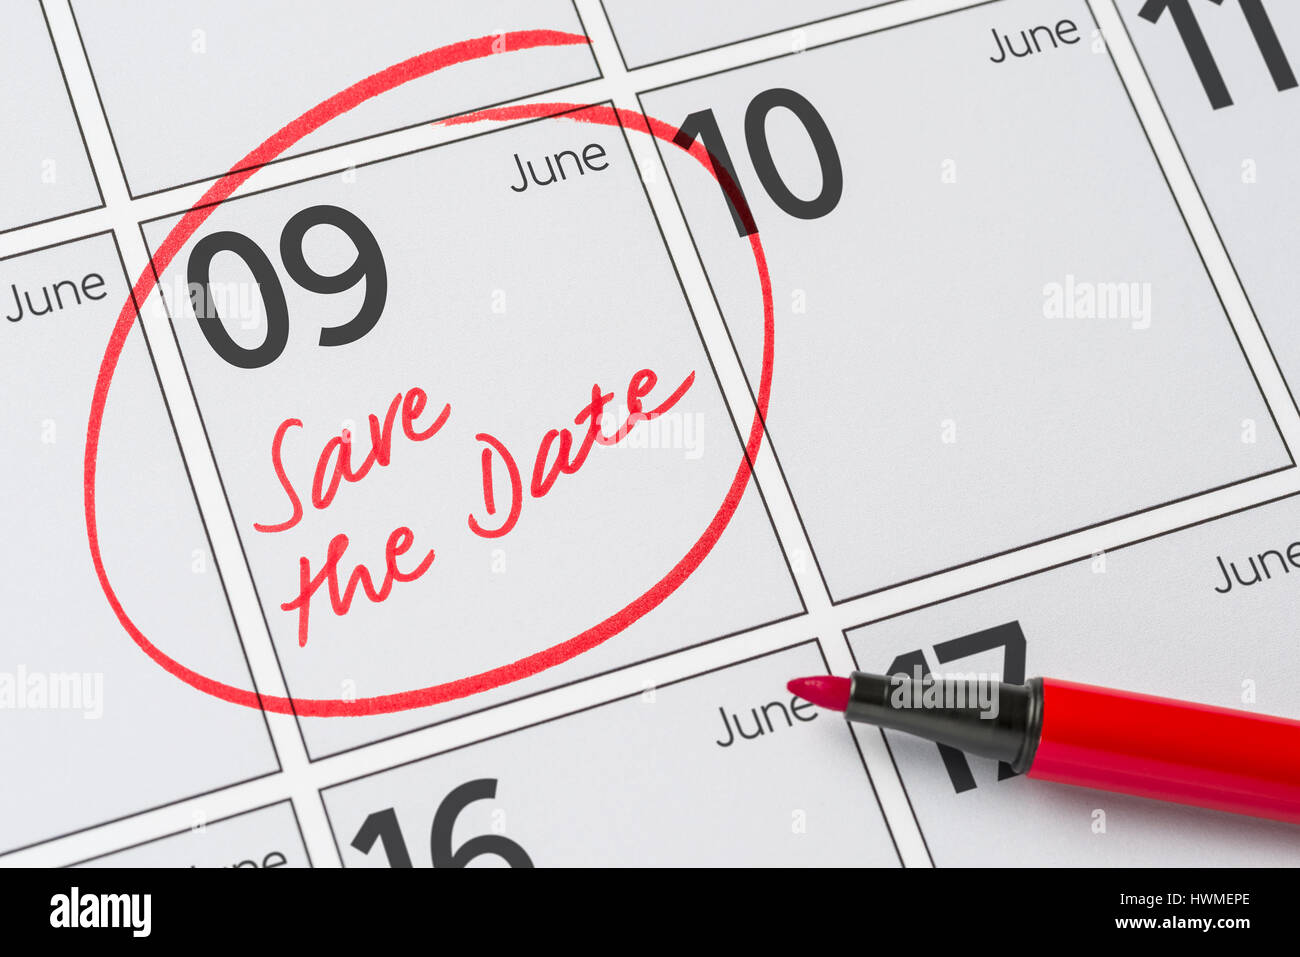 Enregistrer la date inscrite sur un calendrier - juin 09 Banque D'Images